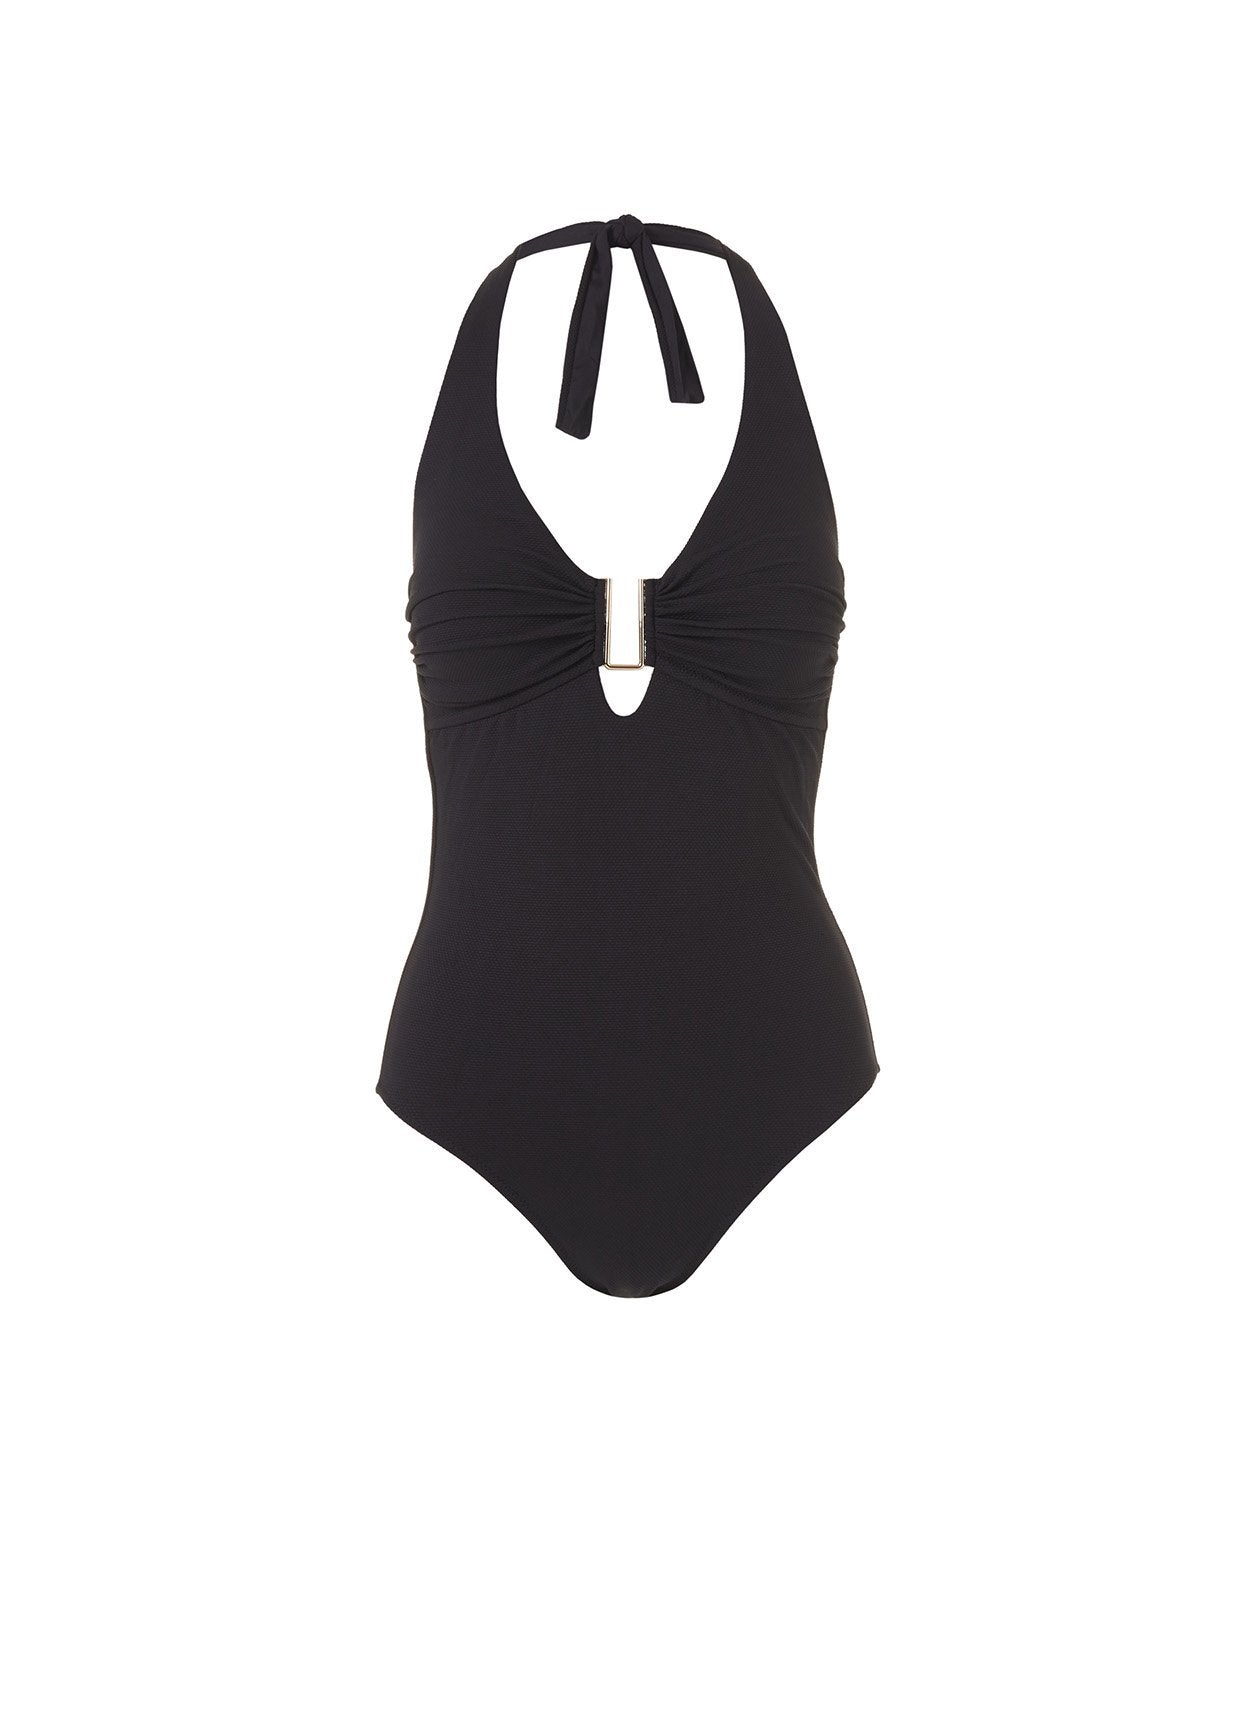 Tampa Black Pique Swimsuit